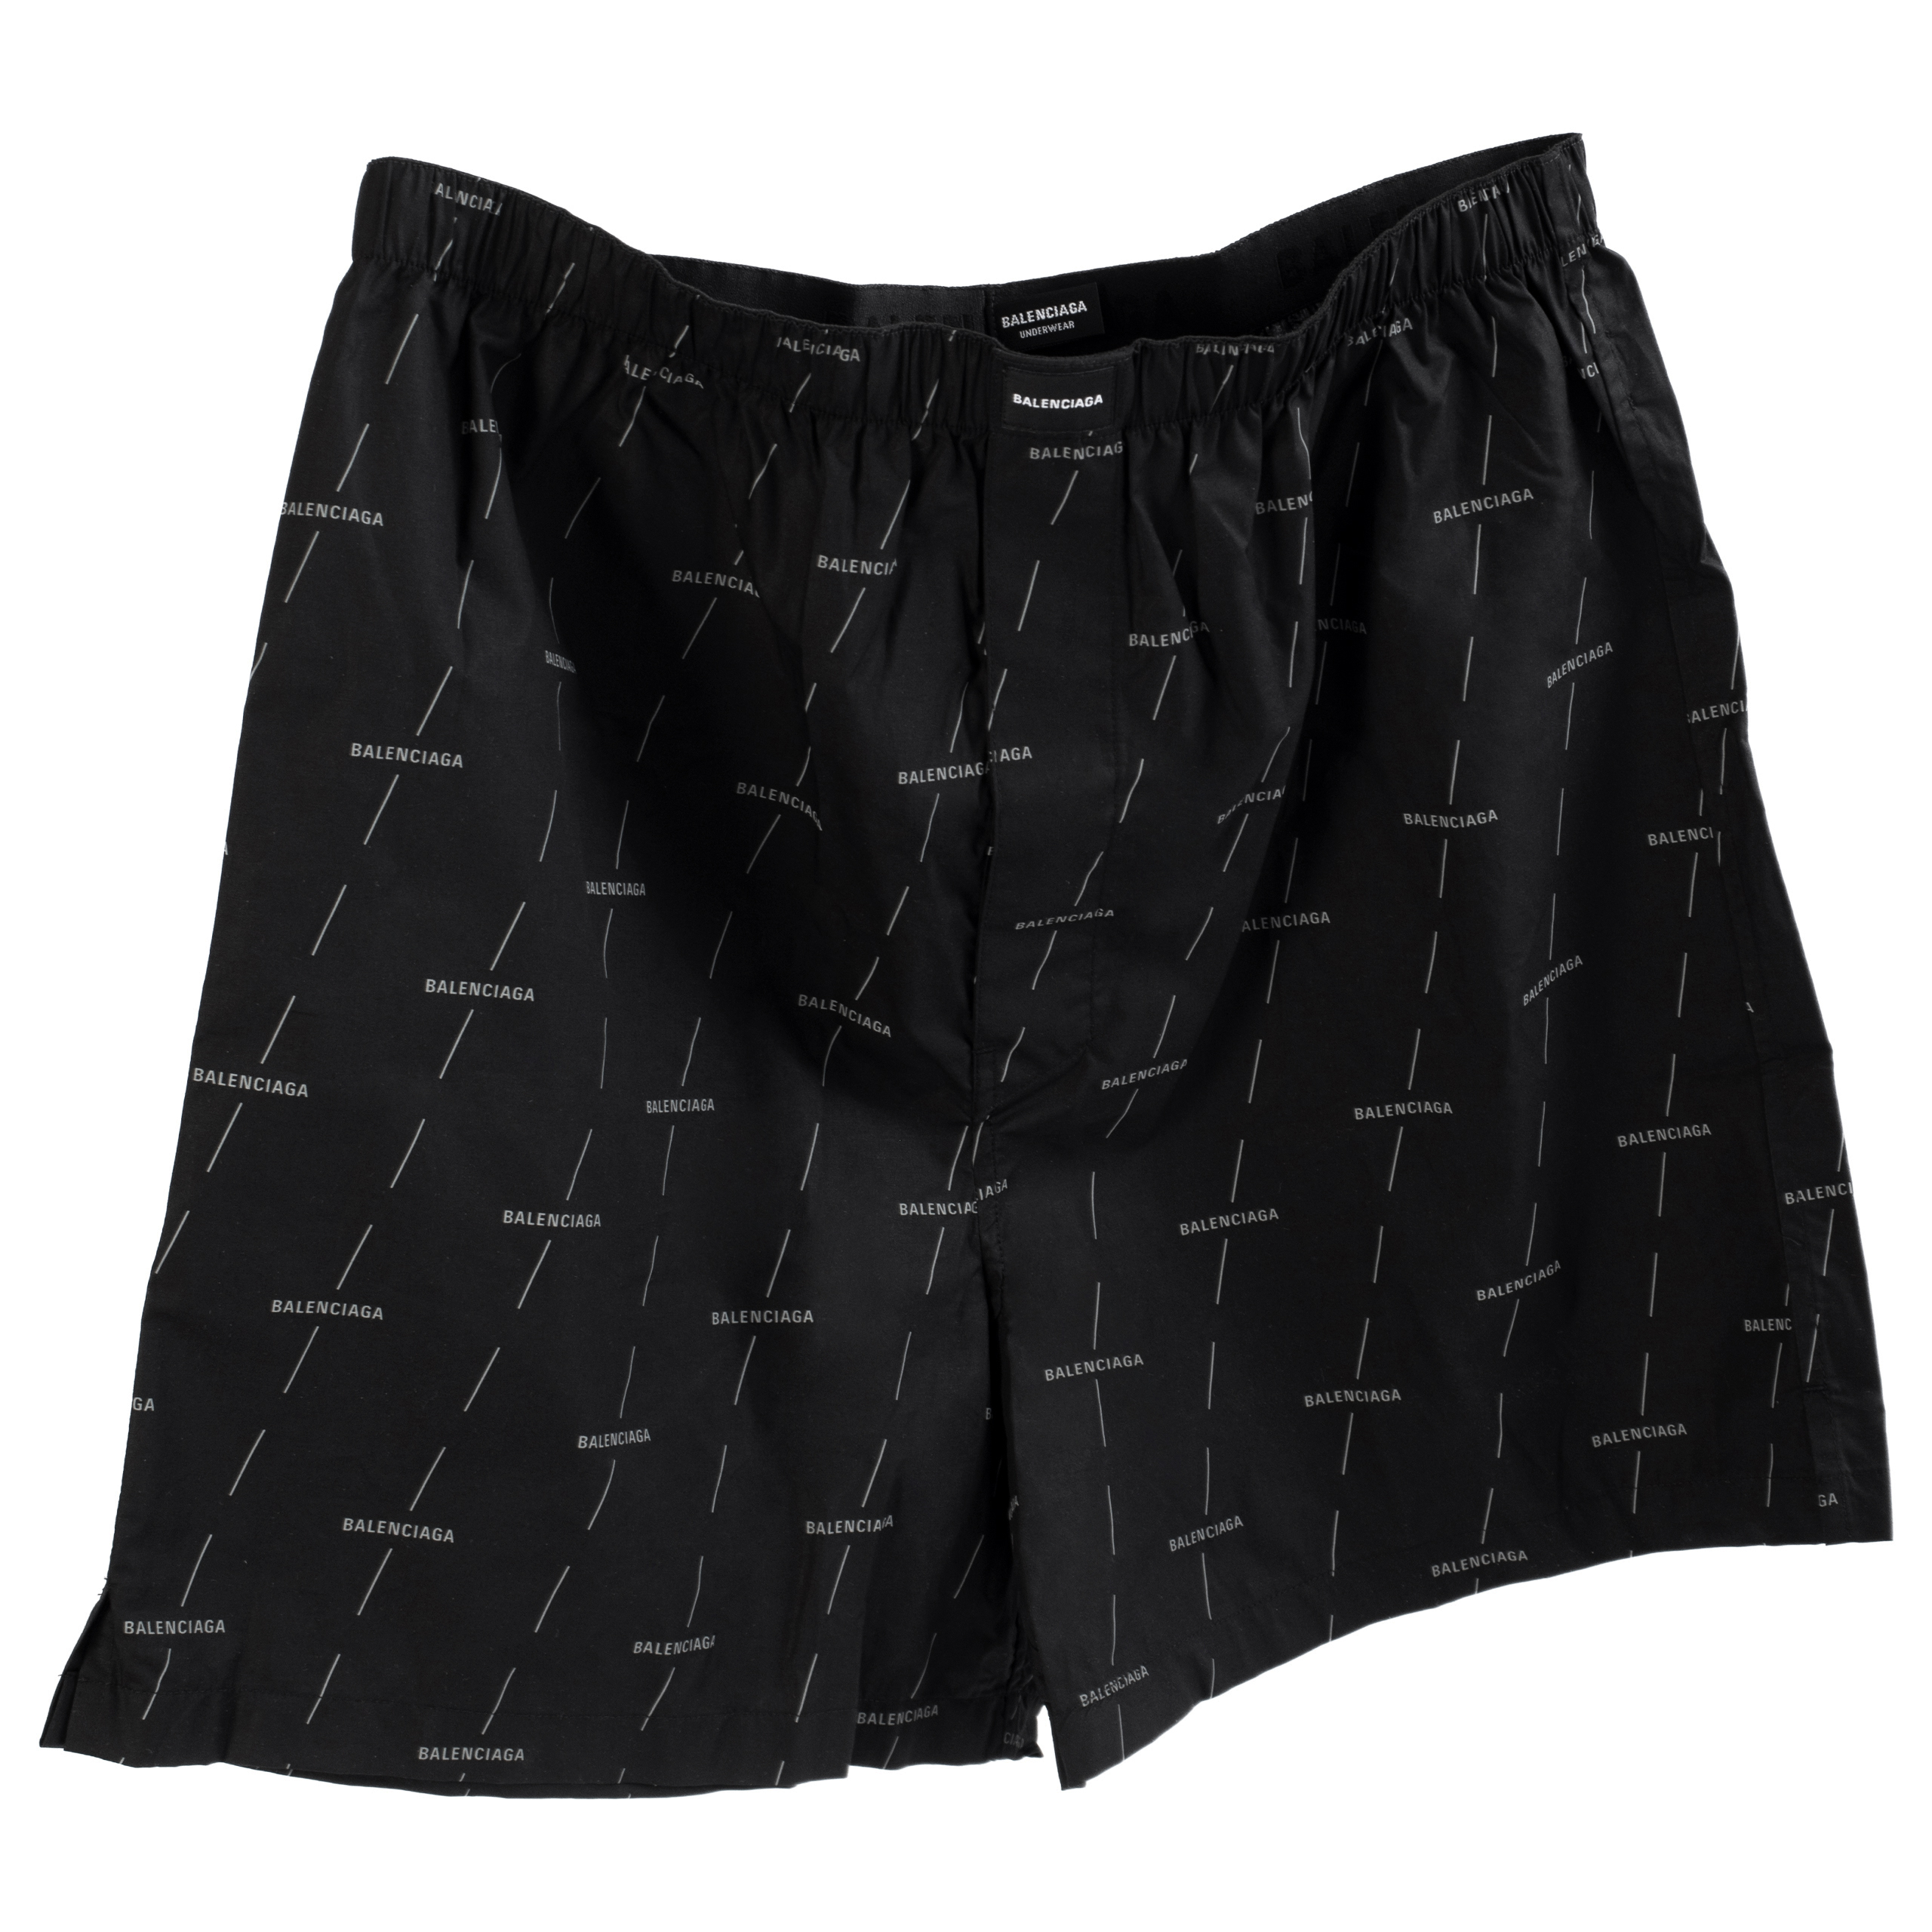 Buy Balenciaga men black cotton boxer shorts for $253 online on